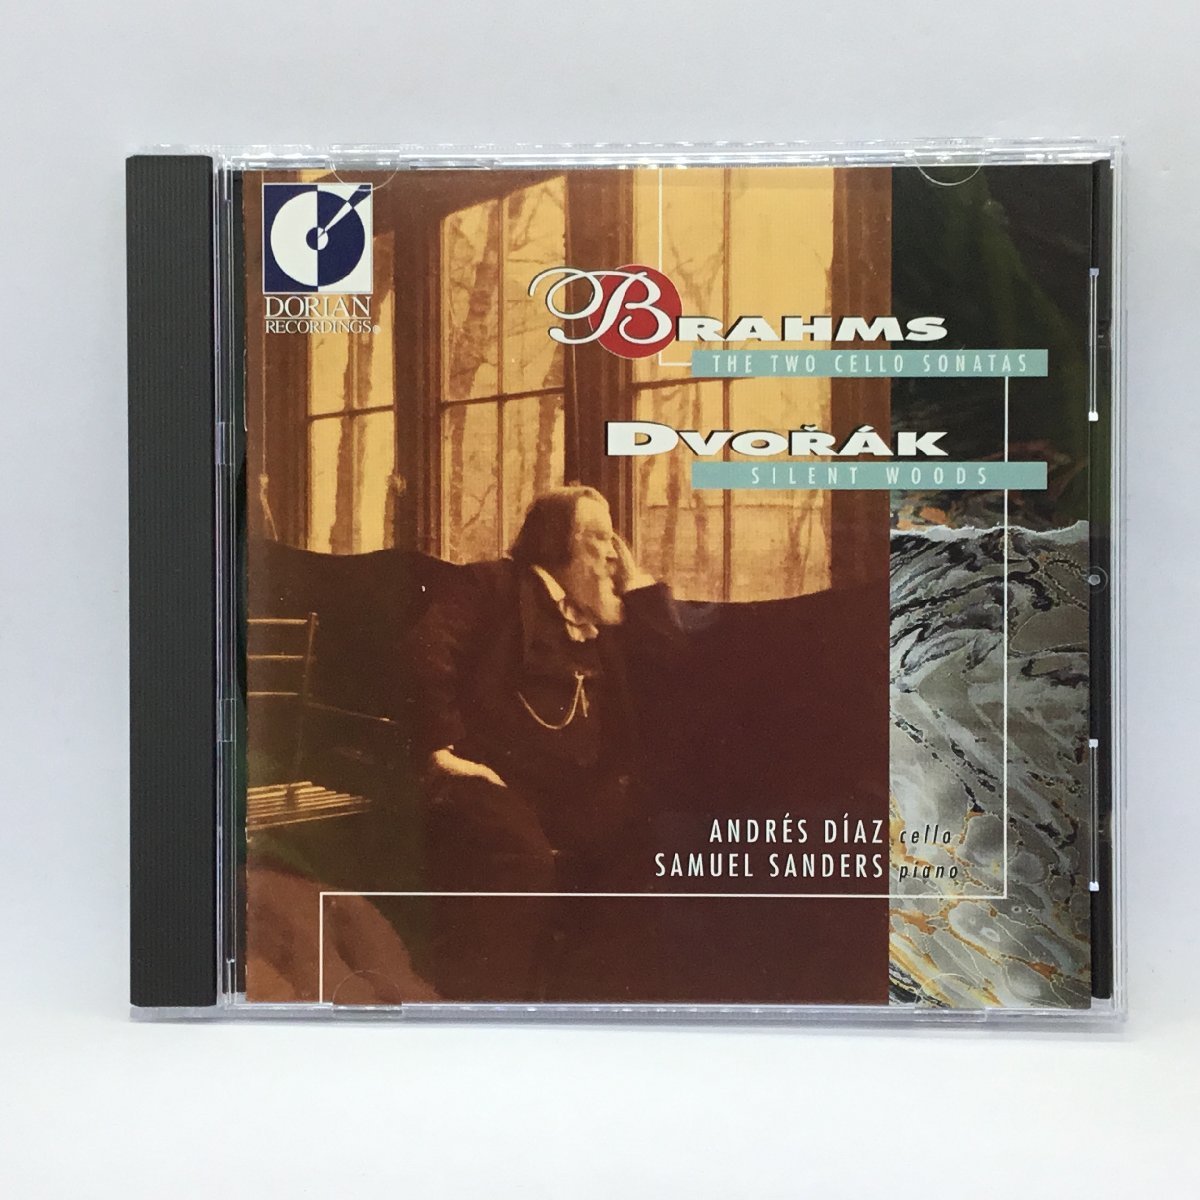 DORIAN◇ディアス(チェロ)、サンダース(ピアノ)/ブラームス:チェロソナタ第1番、第2番、ドヴォルザーク:森の静けさ(CD)SSDR-3035_画像2